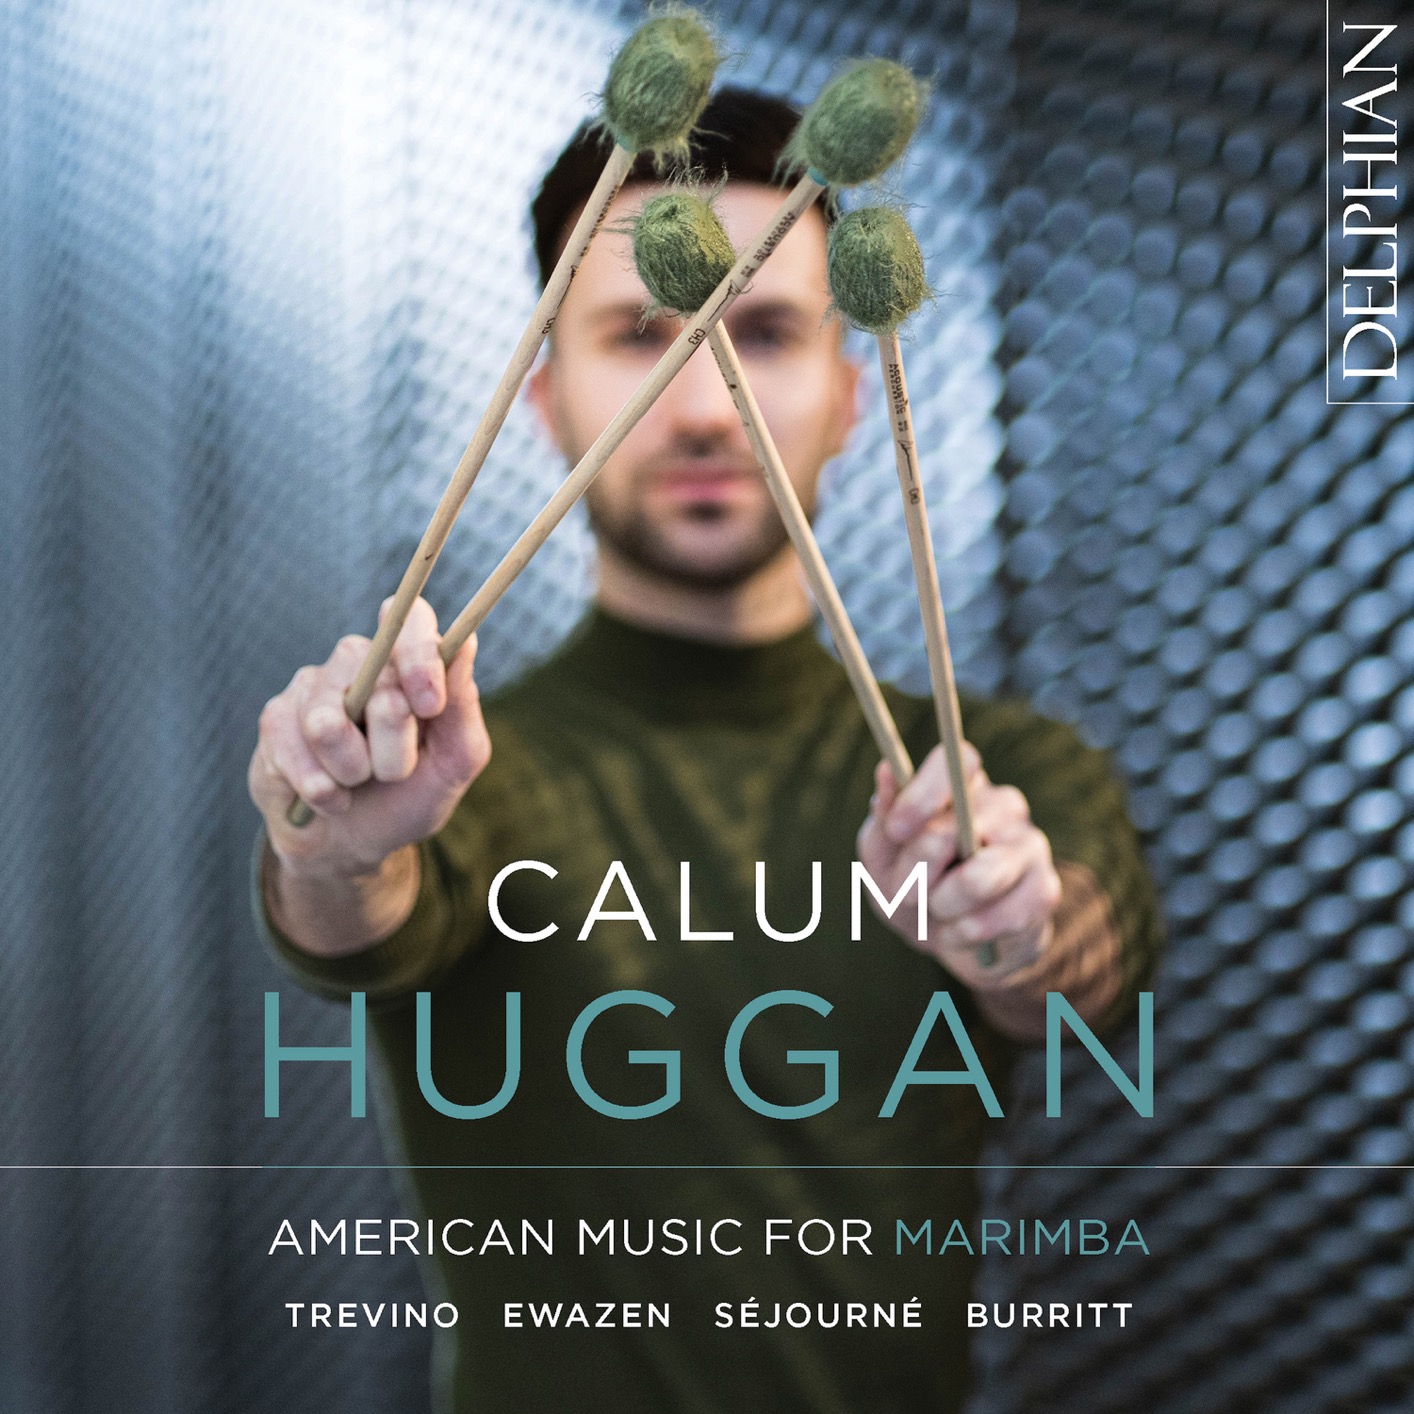 Calum Huggan – American Music for Marimba (2021) [FLAC 24bit/96kHz]